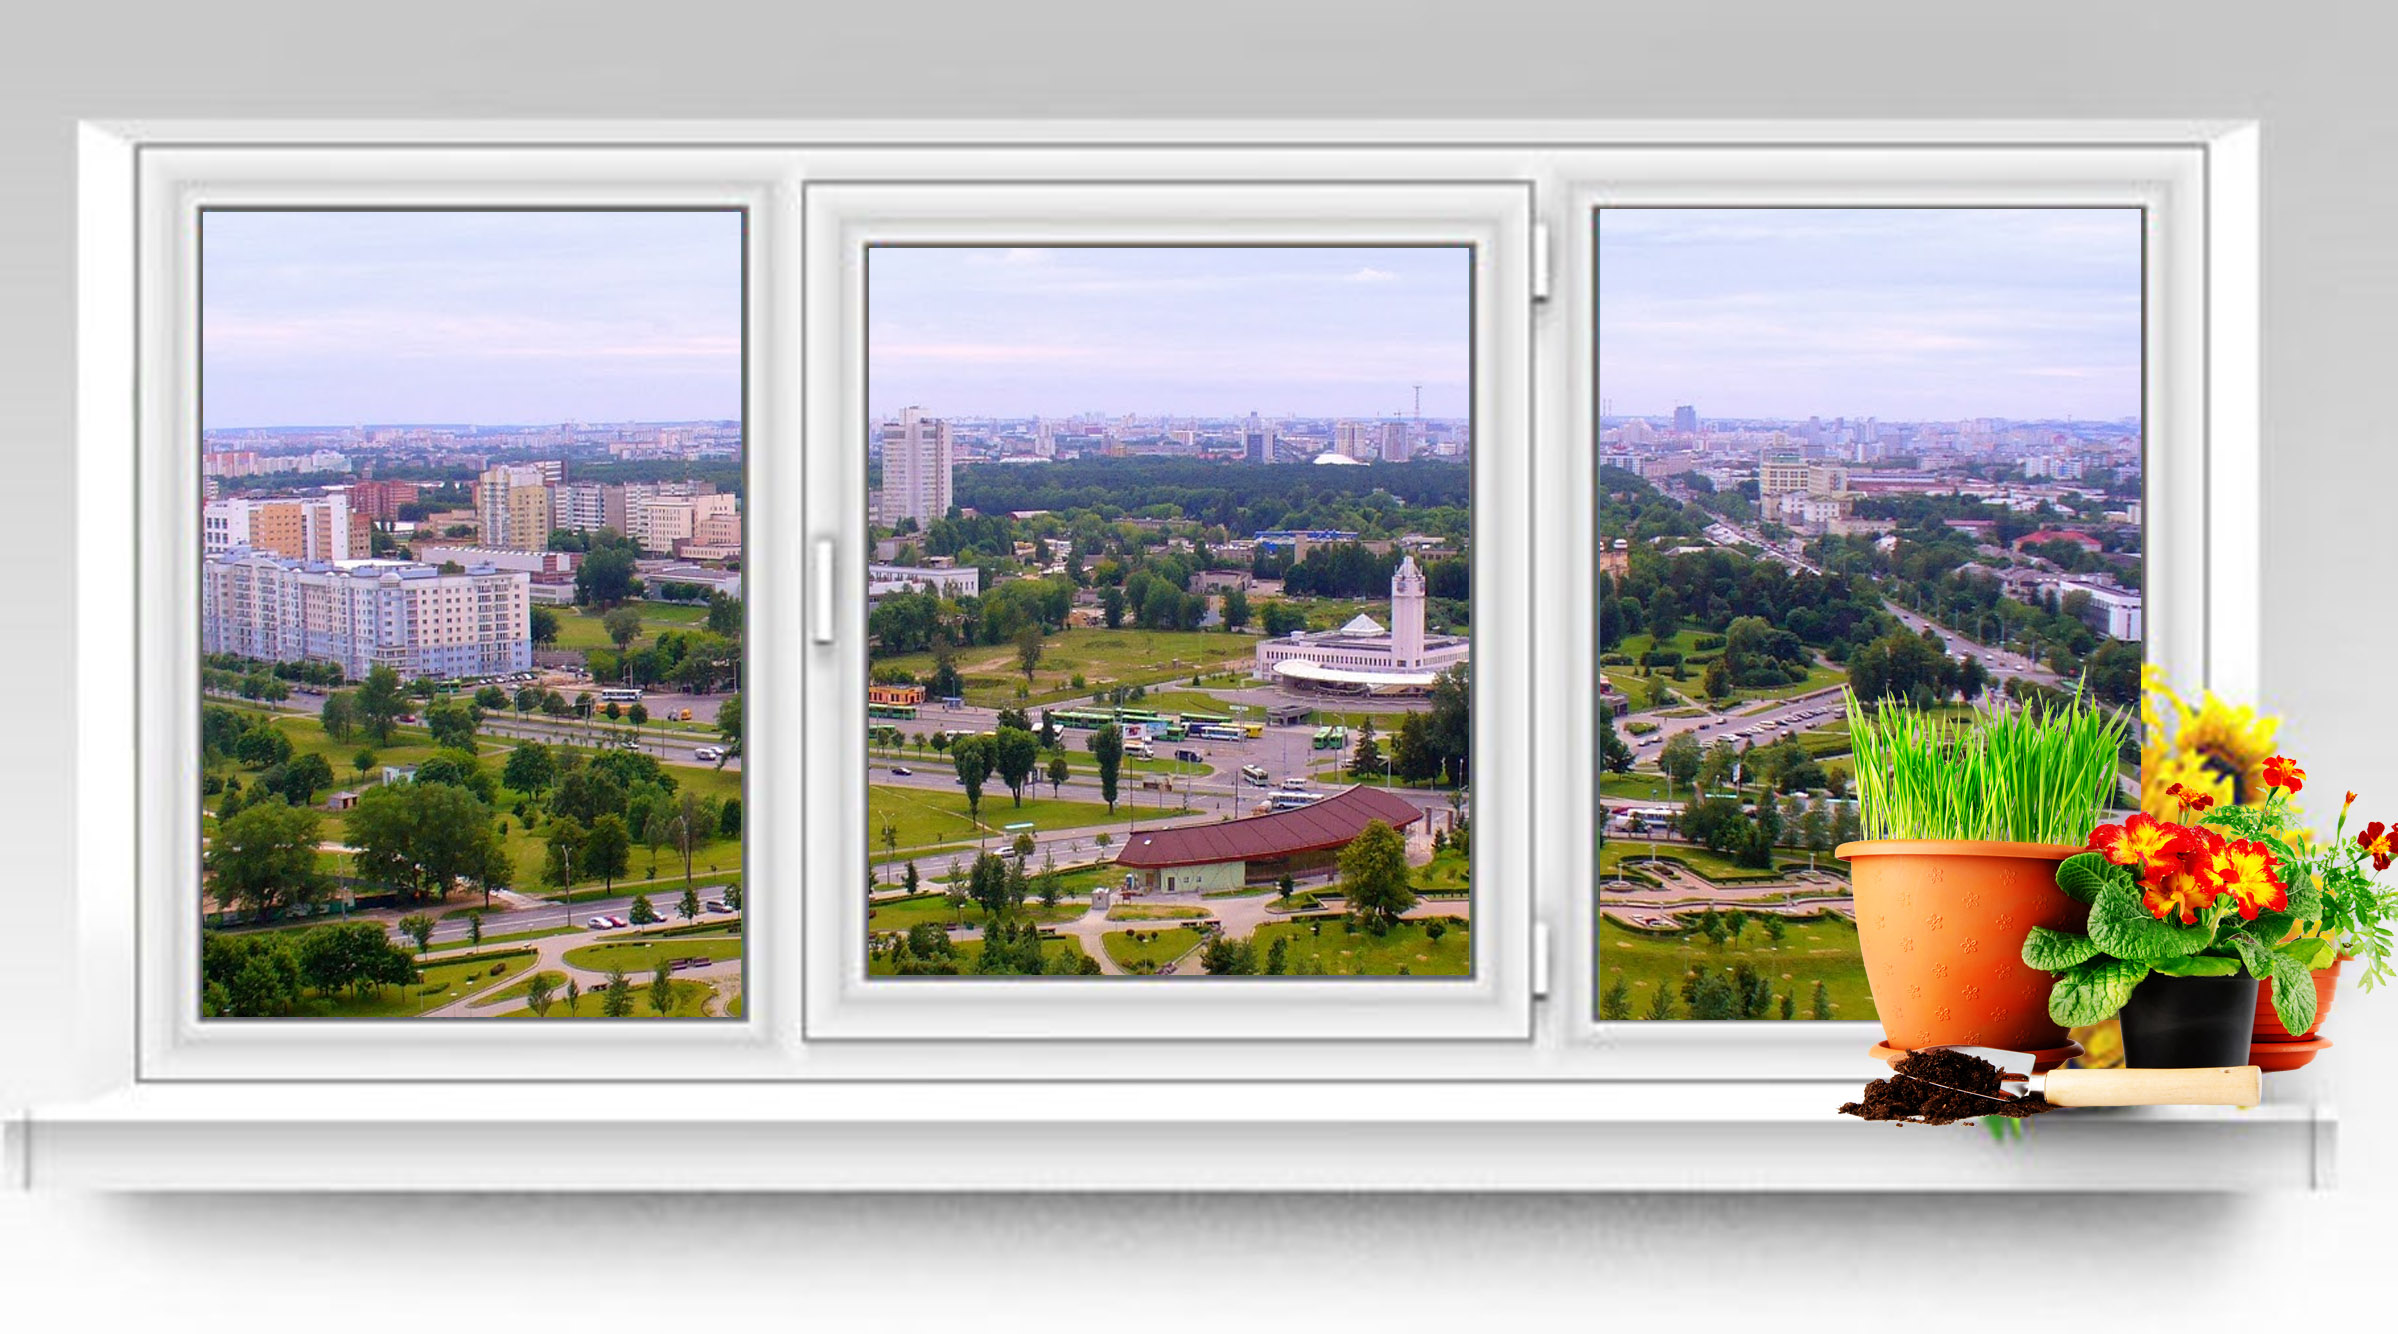 Окна ПВХ в Минске